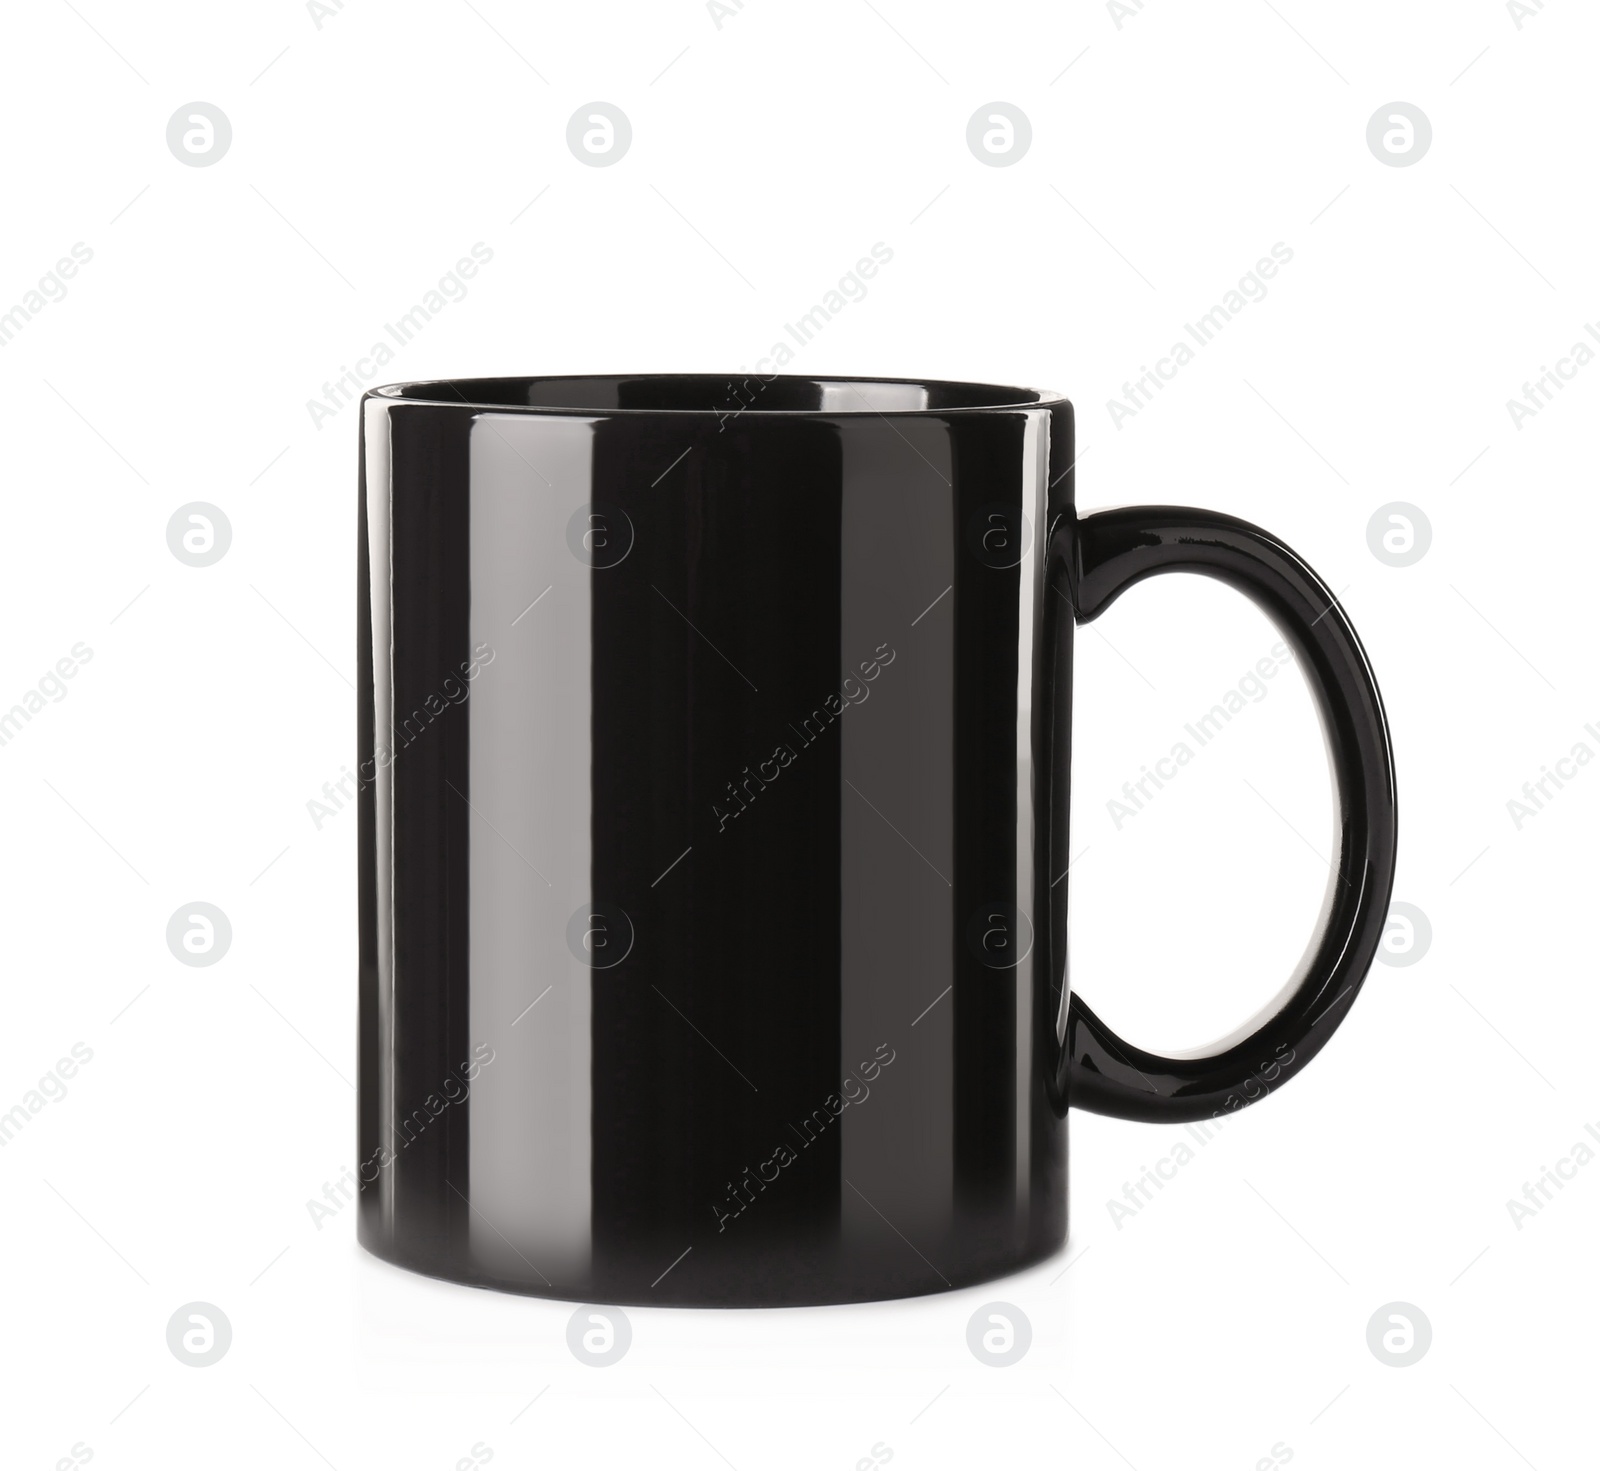 Photo of Empty black ceramic mug isolated on white